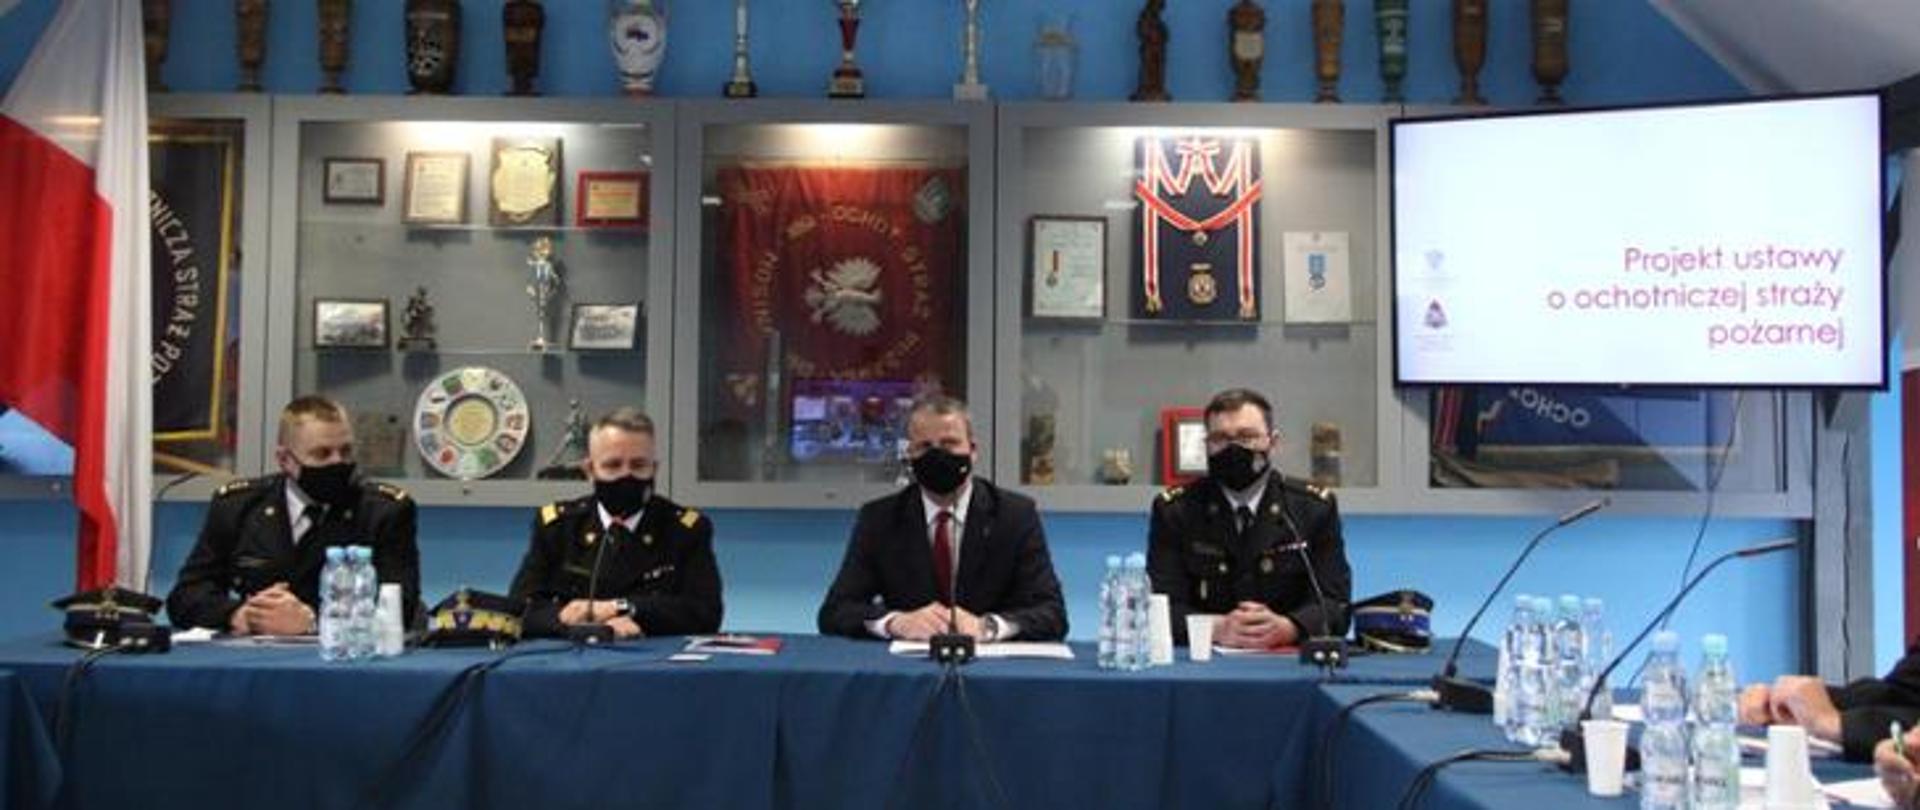 na zdjęciu w remizie ochotniczej straży pożarnej w województwie wielkopolskim odbyło się spotkanie z komendantem głównym psp. w sali siedzi trzech funkcjonariuszy psp.